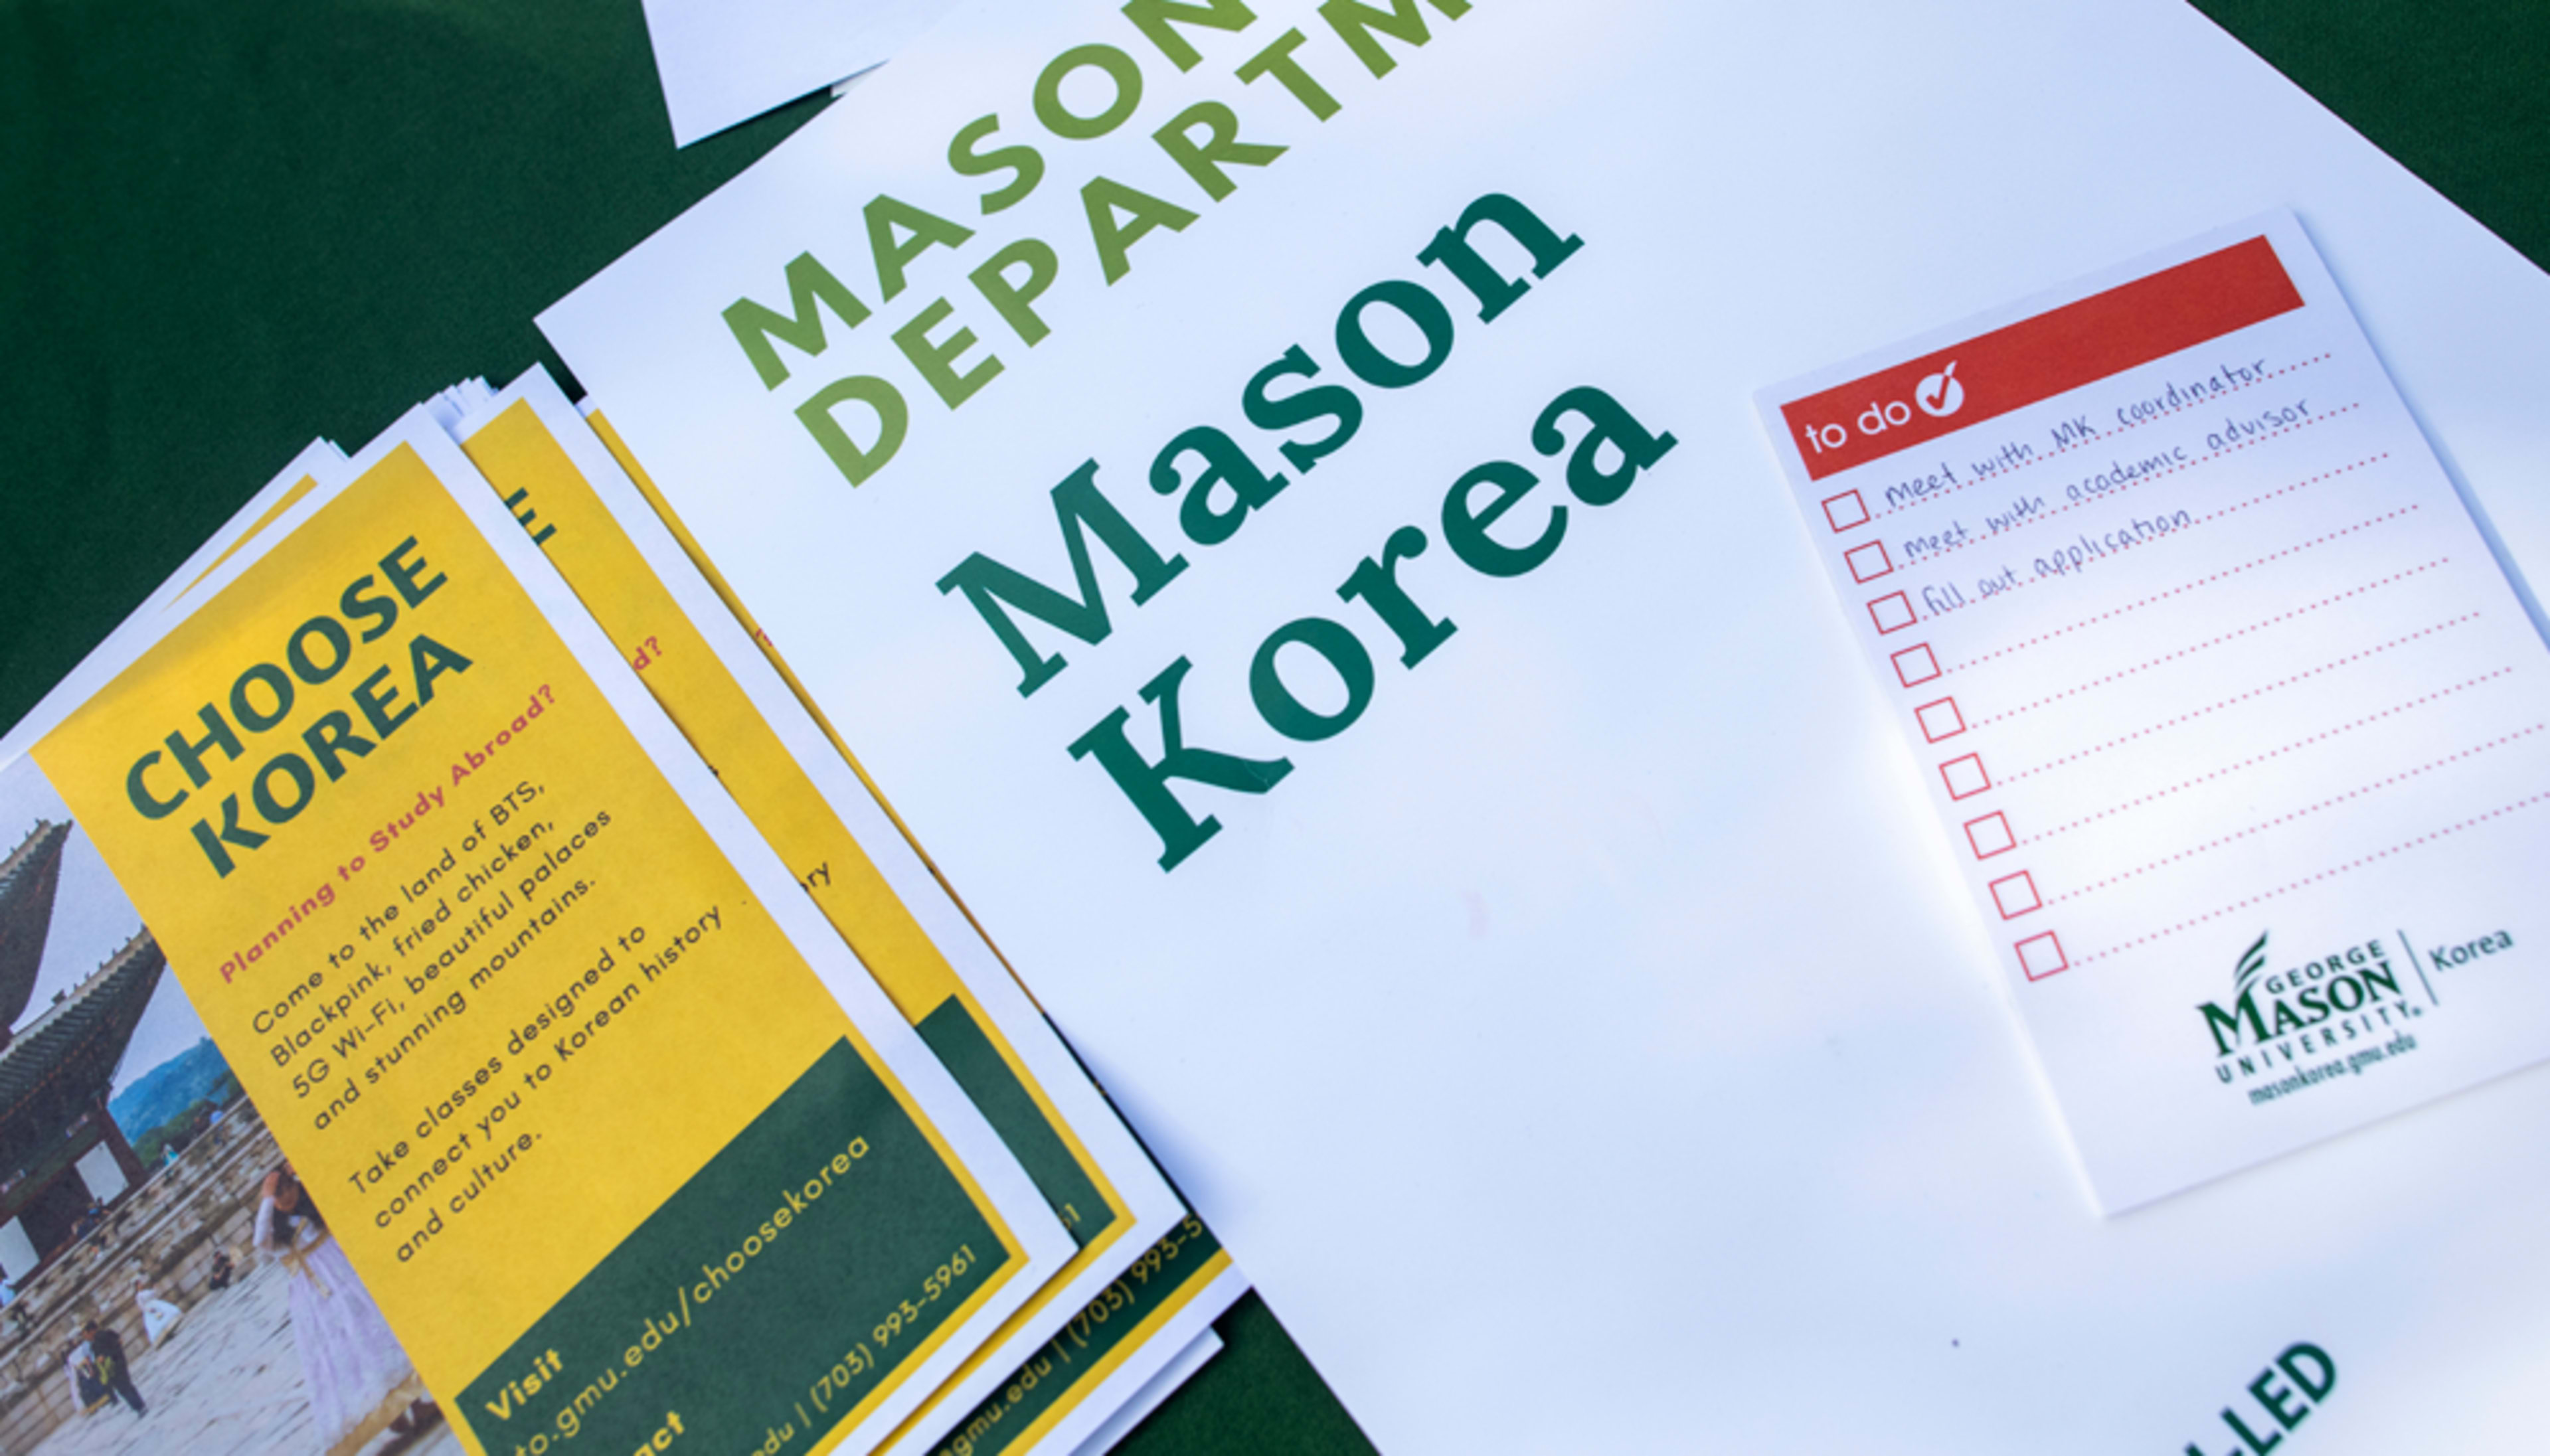 Mason Korea